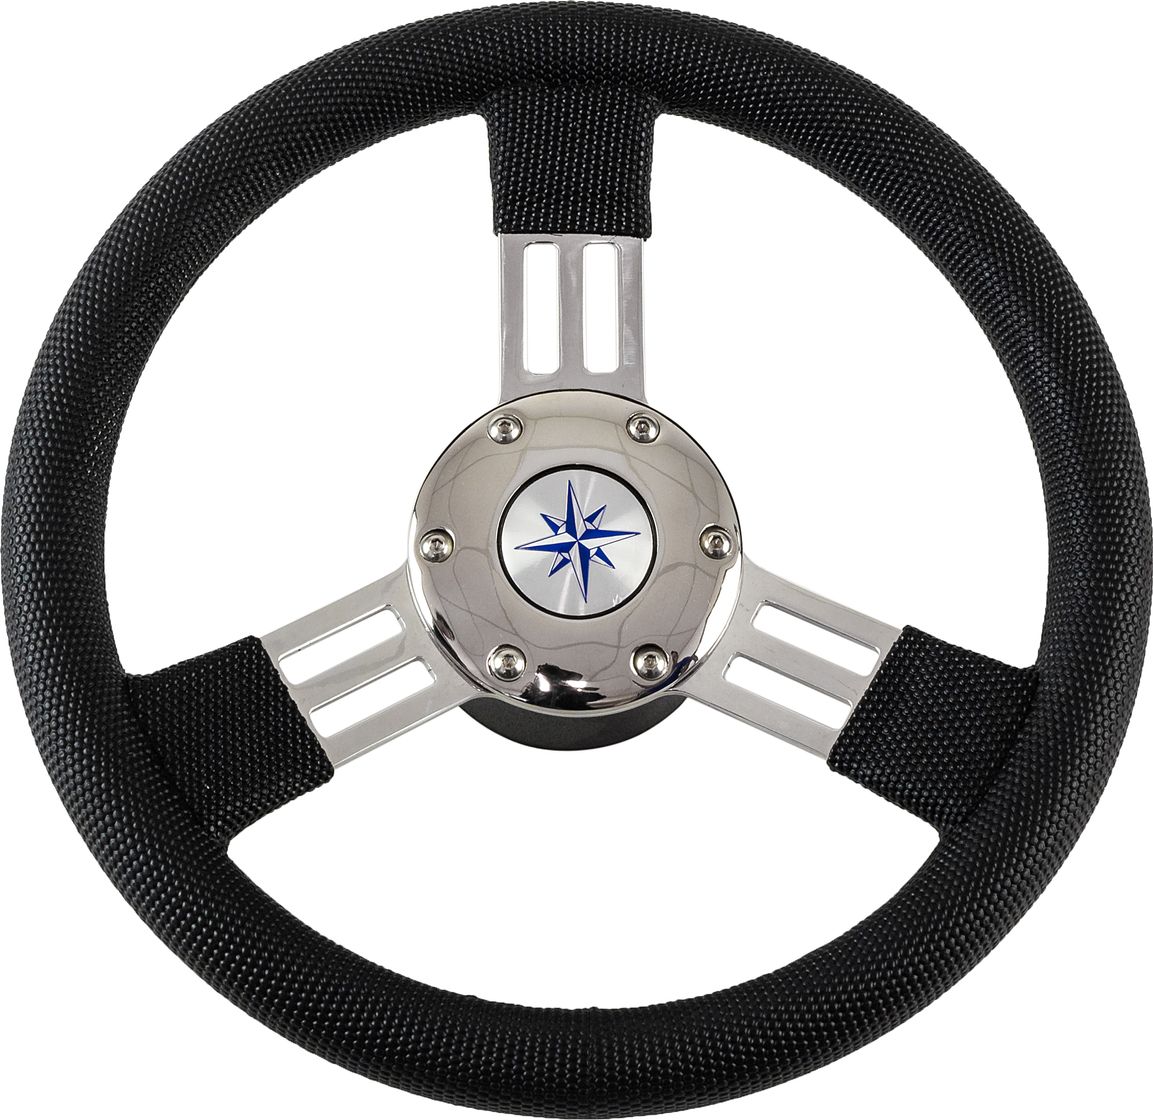 Рулевое колесо PEGASO обод черный, спицы серебряные д. 300 мм VN13327-01 рулевое колесо manta обод спицы серебряные д 355 мм vn70551 01